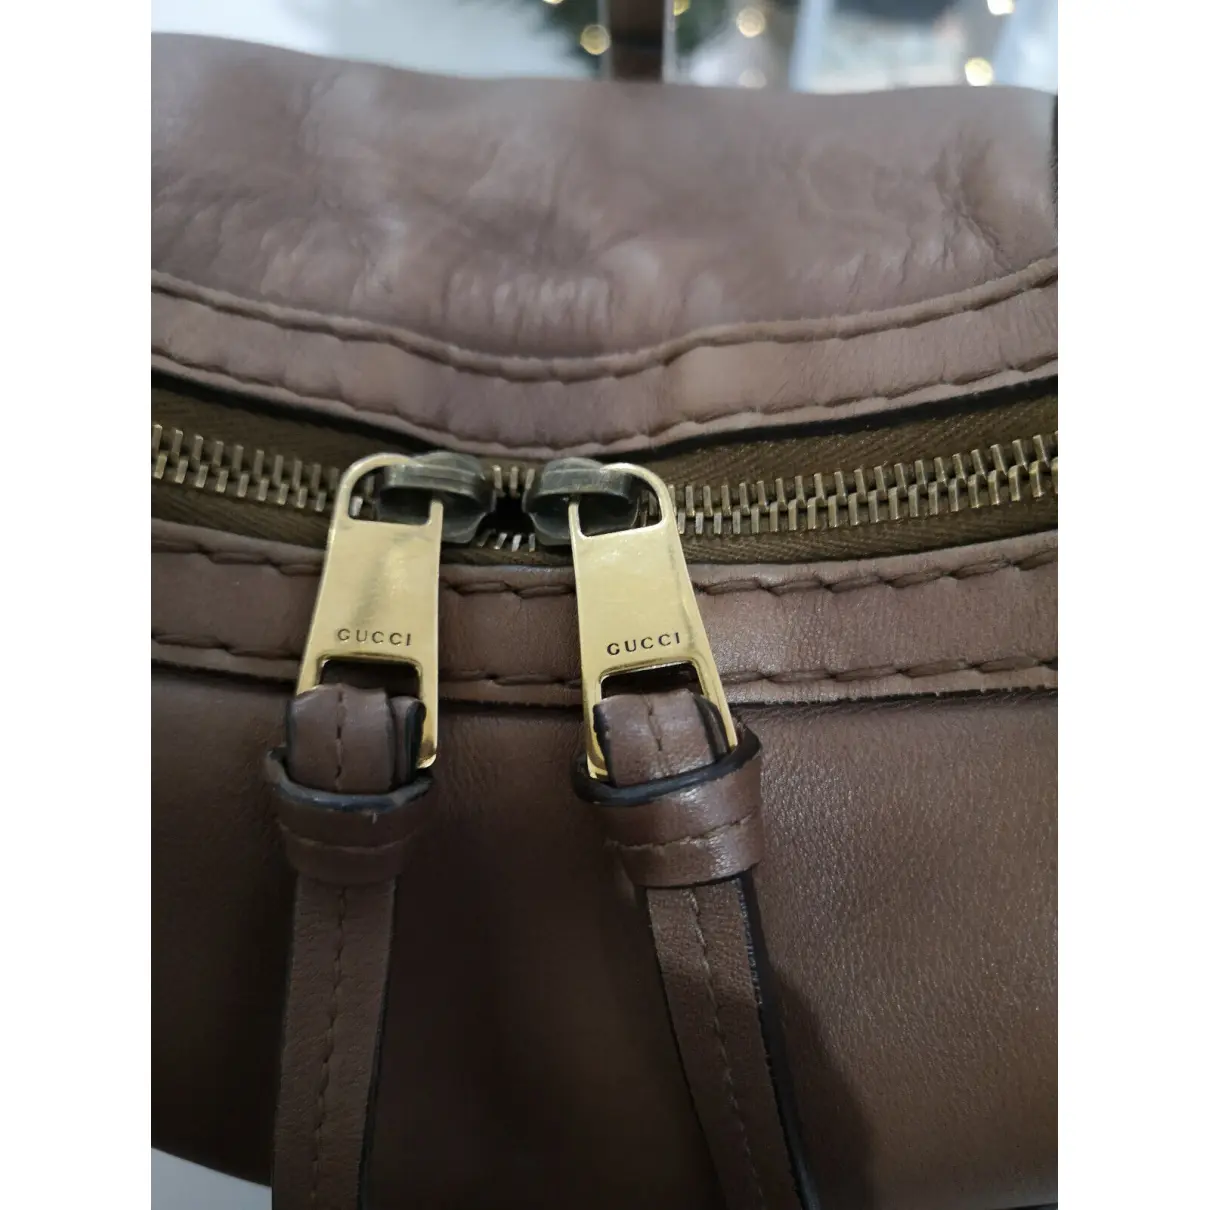 Hobo leather handbag Gucci - Vintage